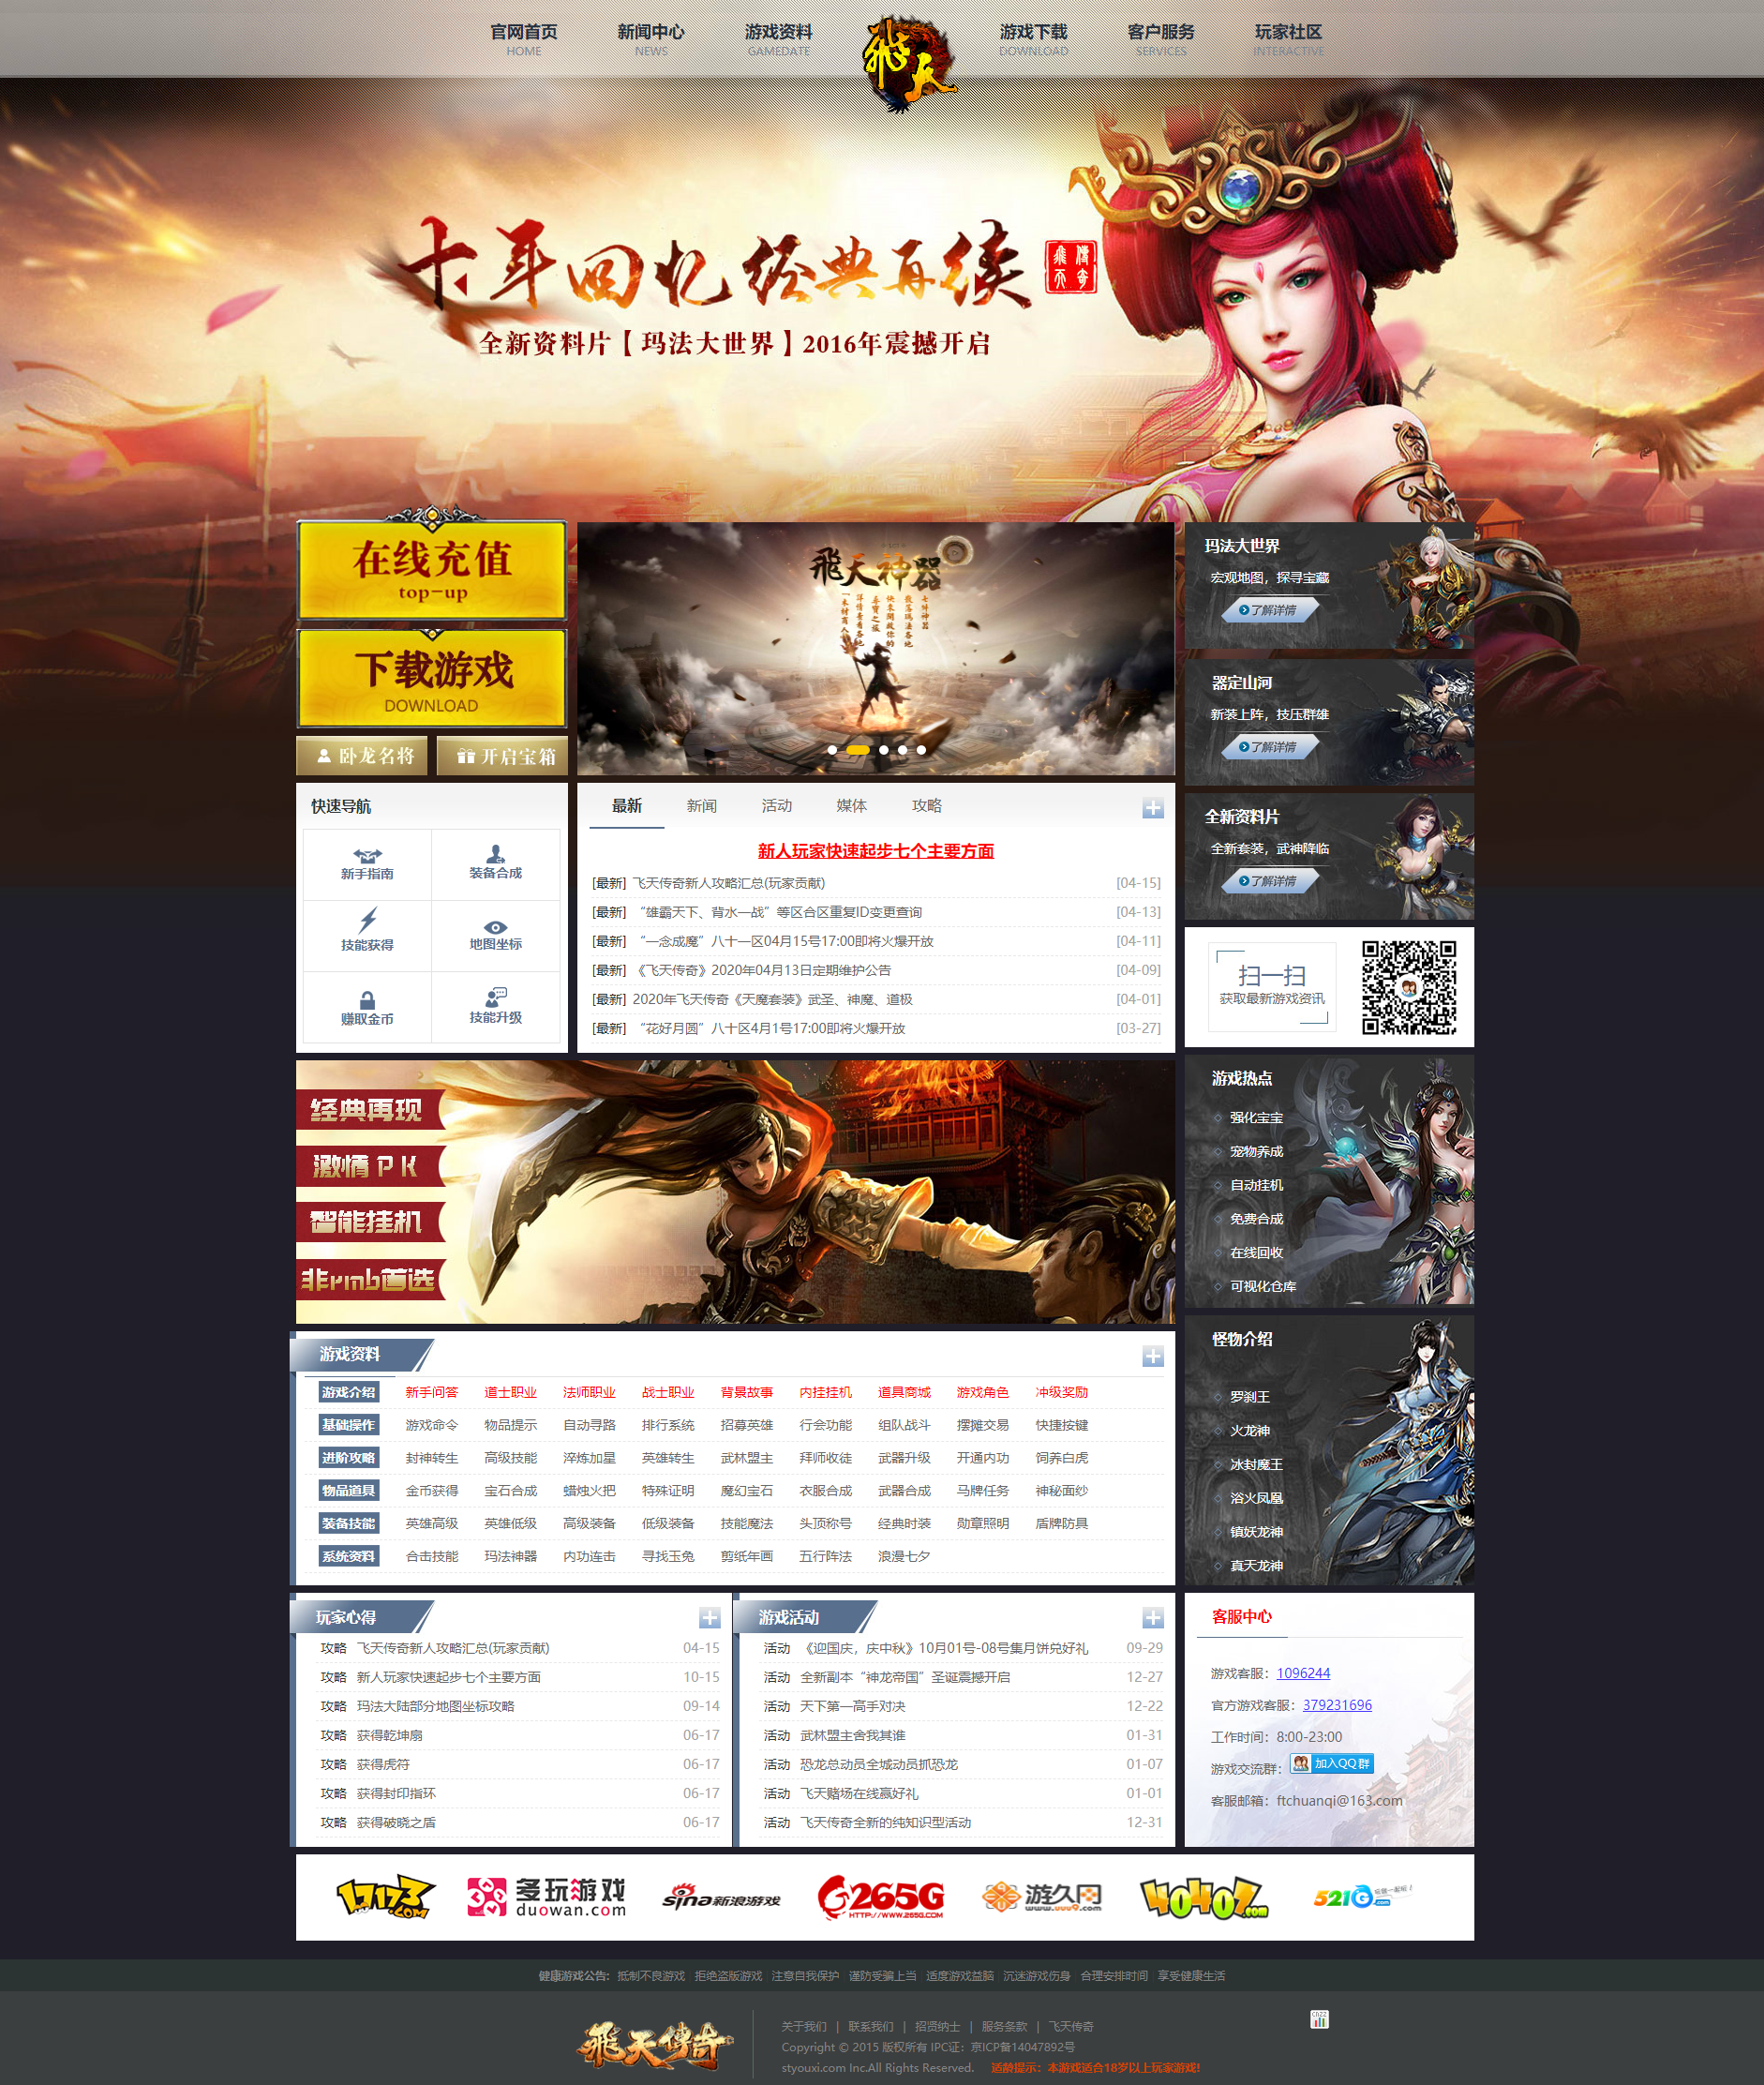 html纯静态《飞天传奇》 传奇网站 千年游戏网模版传奇源码 神途官网模板